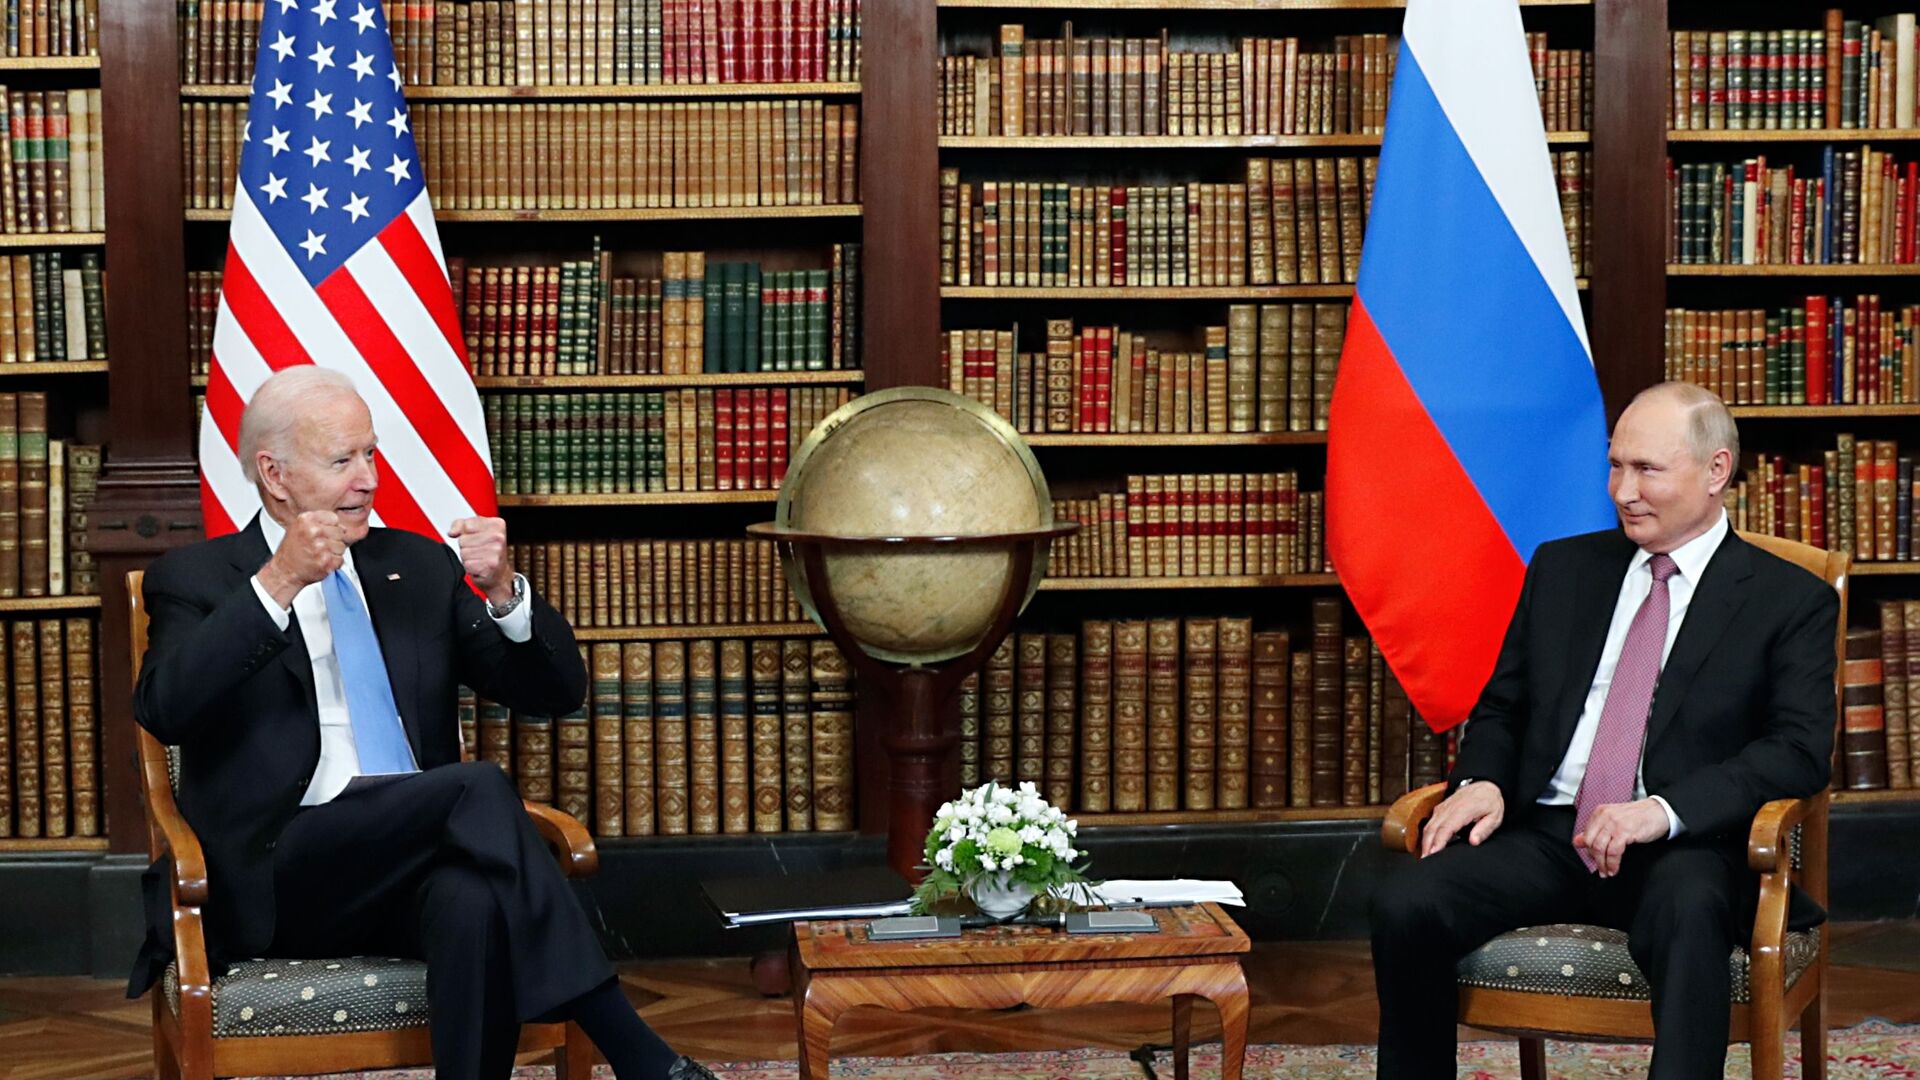 16 يونيو/ حزيران 2021 - صورة تجمع الرئيس الروسي  فلاديمير بوتين والرئيس الأمريكي جو بايدن في  فيلا لا غرانج في جنيف السويسرية. - سبوتنيك عربي, 1920, 27.07.2021